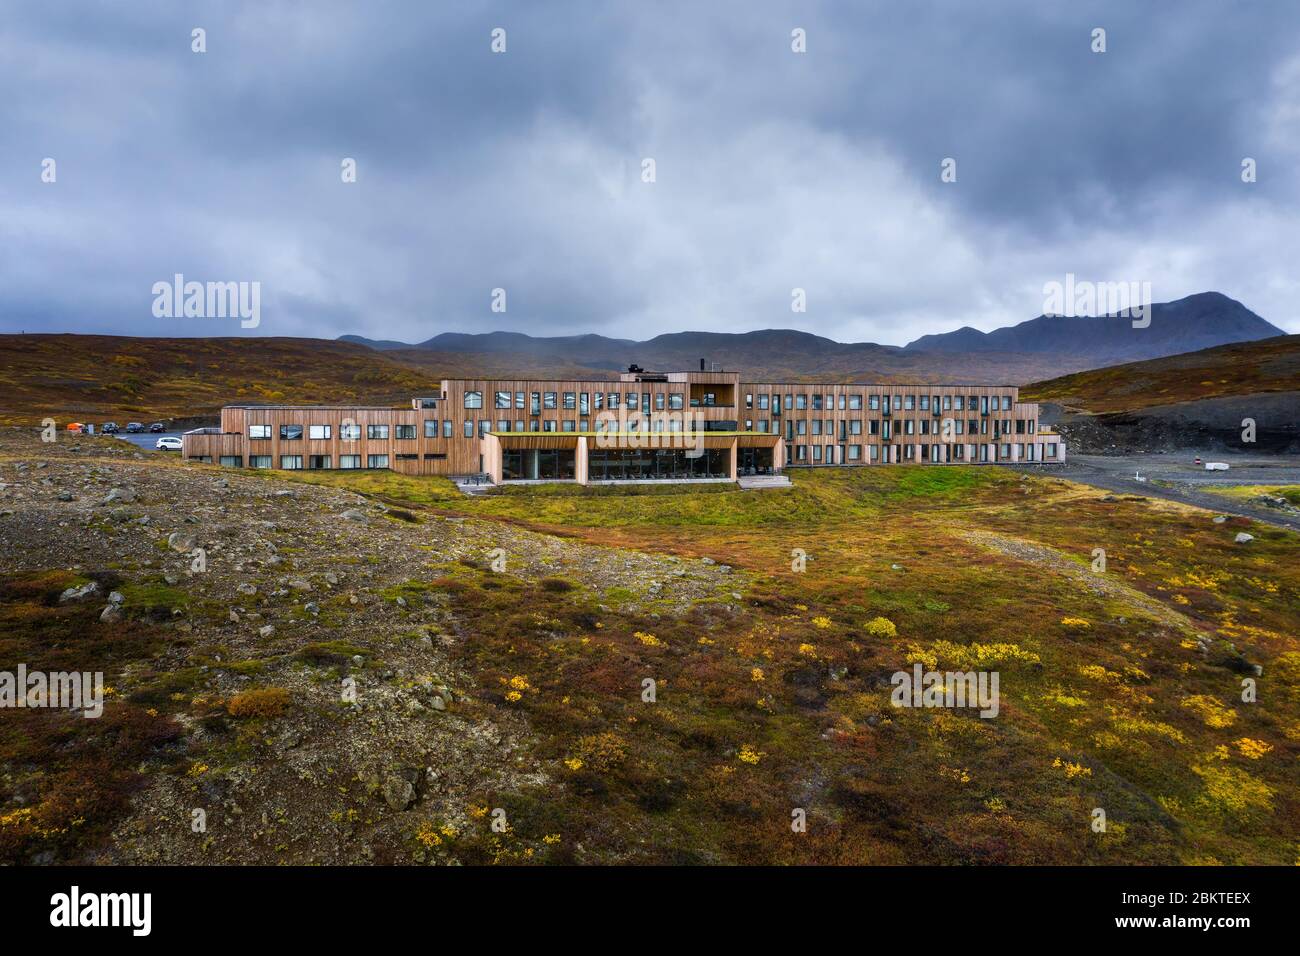 Le Fosshotel 73320 situé sur la rocade à proximité d'un superbe lac en Islande Banque D'Images